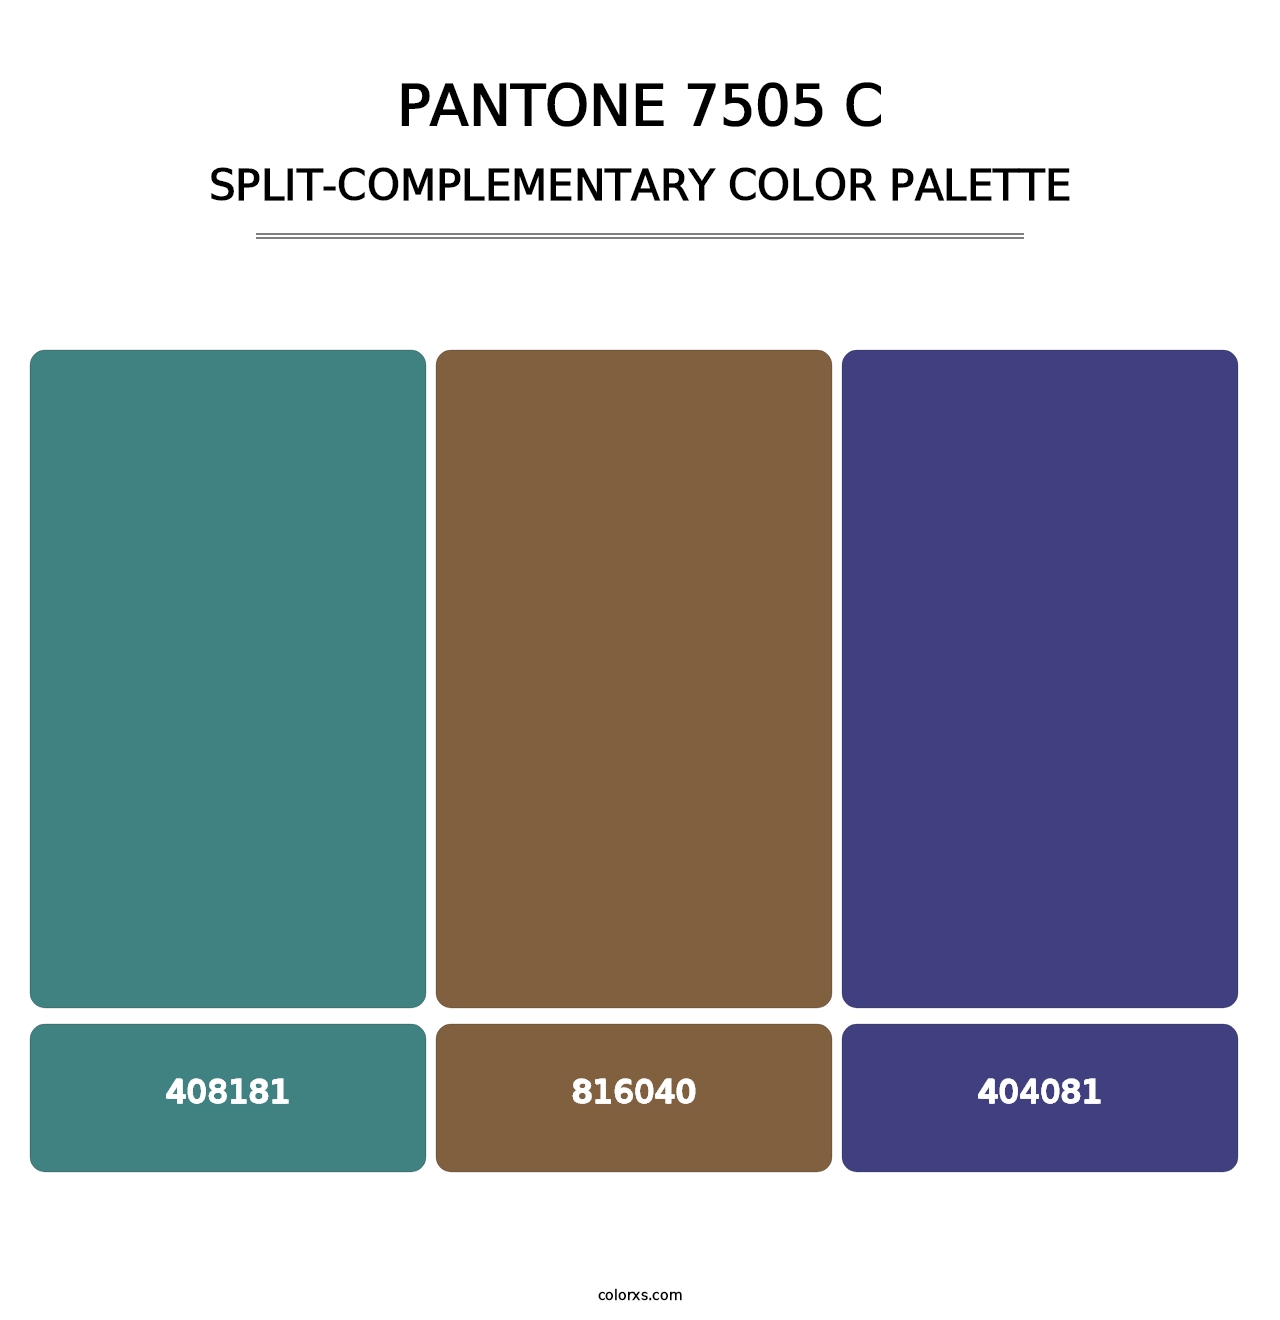 PANTONE 7505 C - Split-Complementary Color Palette